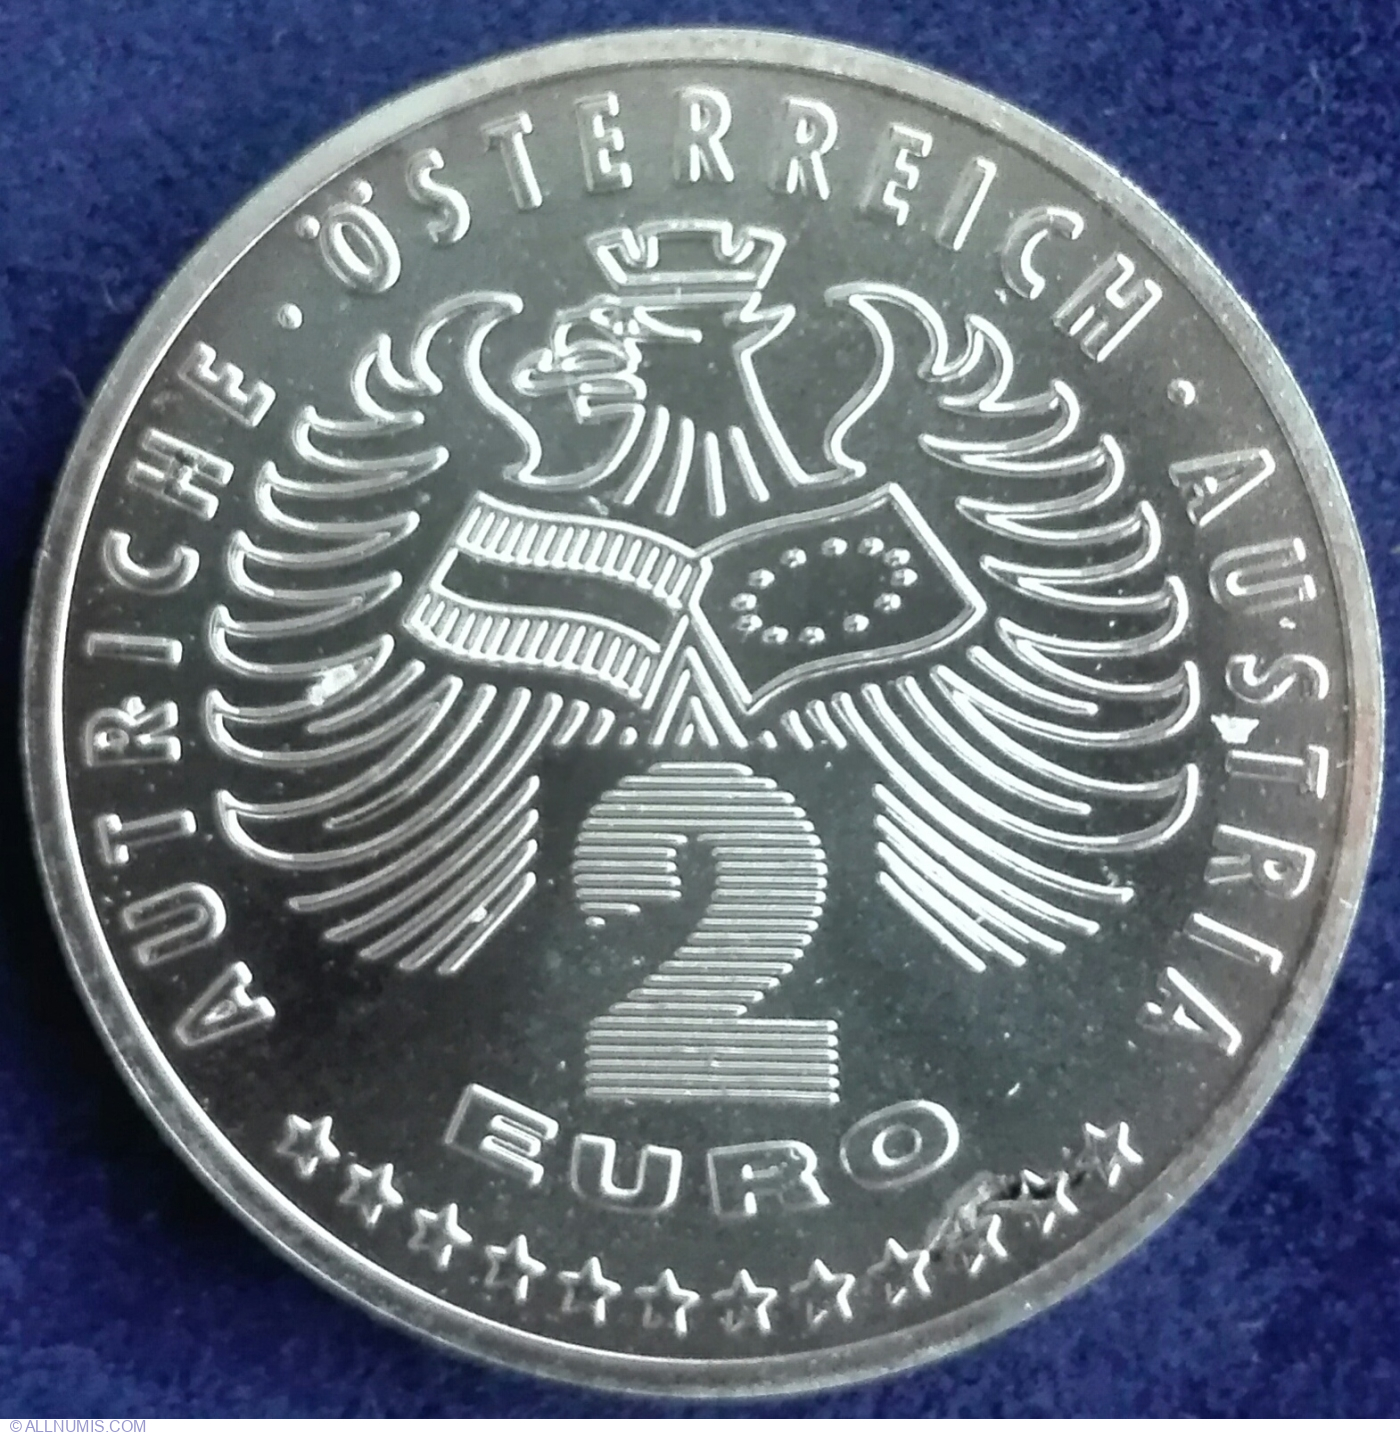 Austria SILVER COIN 2 EURO 1996 Very Rare Collectible Money